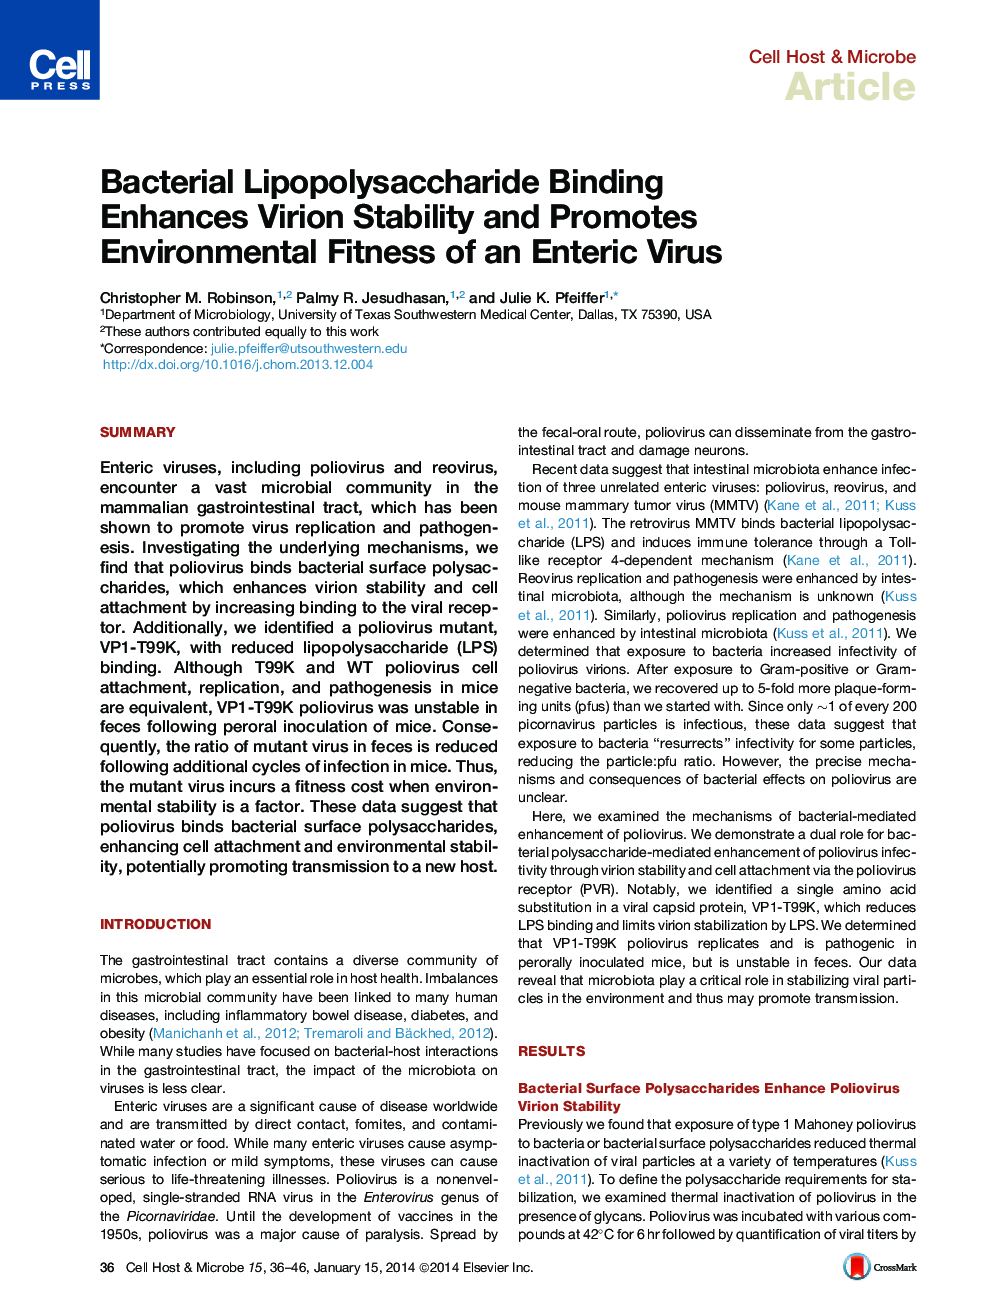 اتصال لیپوپلی ساکارید باکتریایی باعث تقویت پایداری ویروسی و ارتقاء تناسب زیست محیطی ویروس آنتی ژن می شود. 